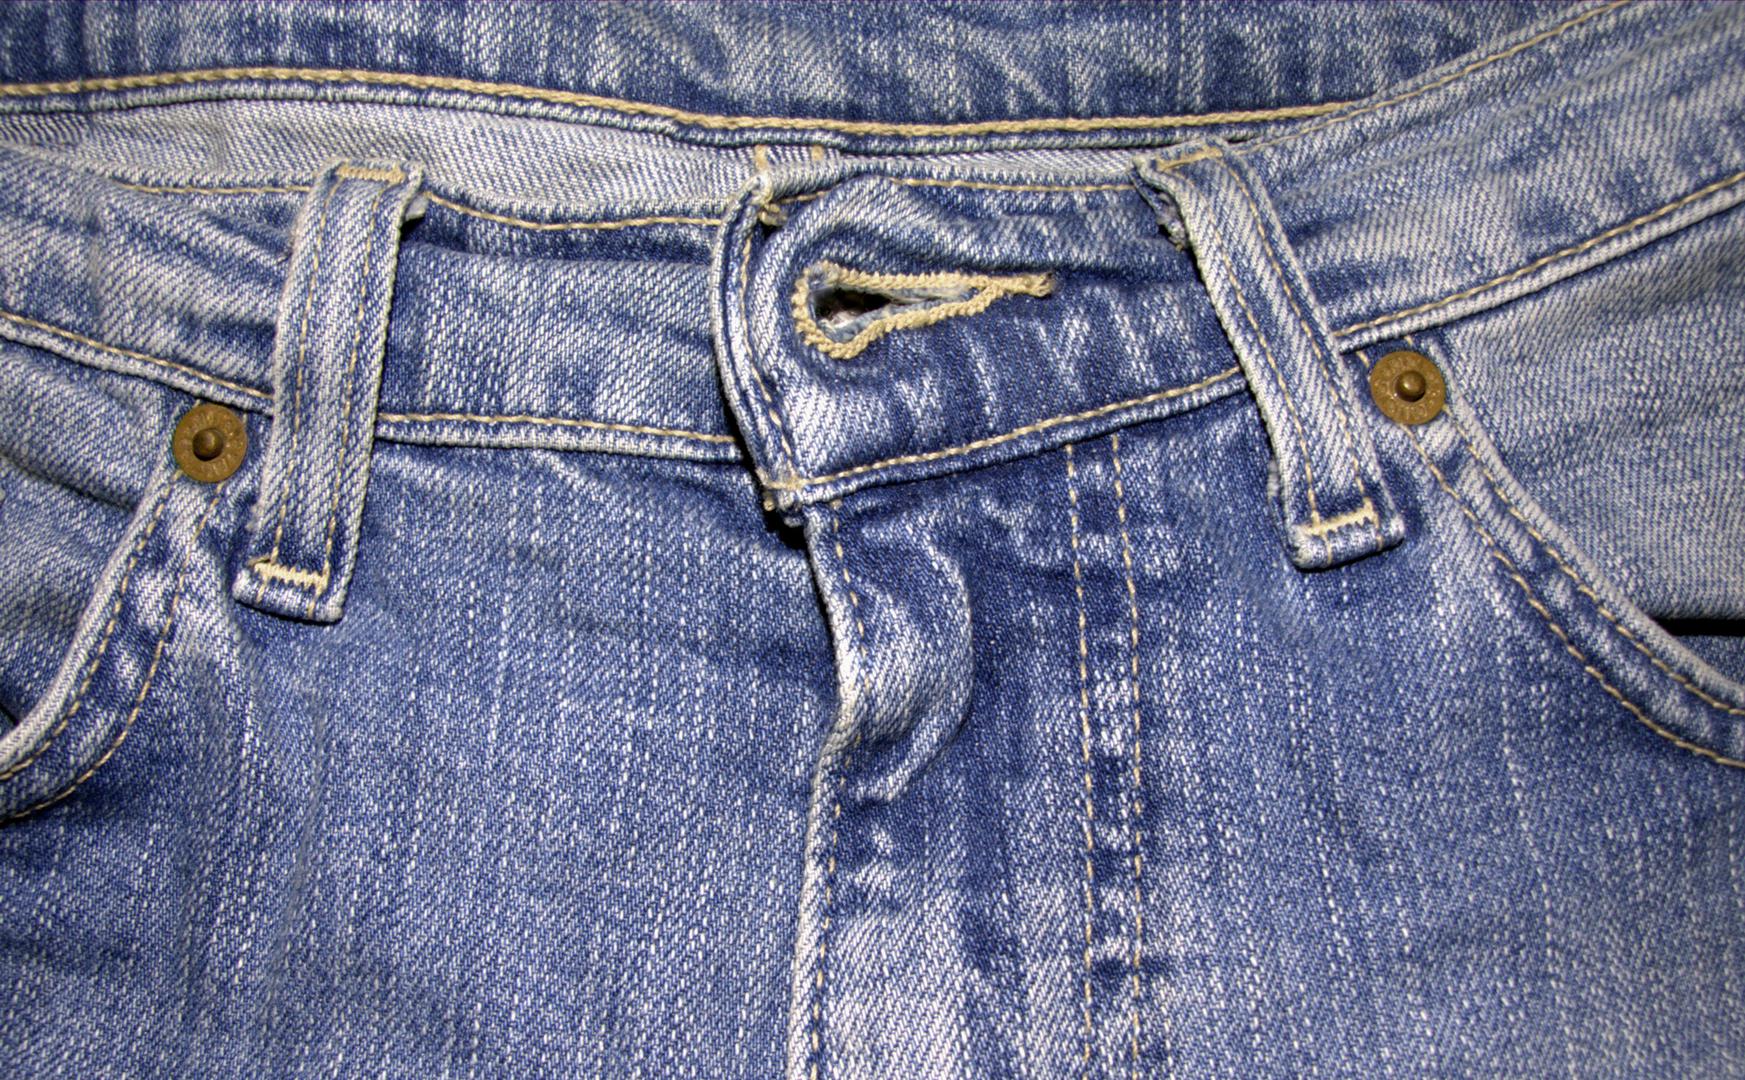 Nedavno istraživanje koje je proveo The pudding, pokazalo je da su džepovi na ženskim hlačama za 48 posto manji u odnosu na muške modele, a pokazalo je to mjerenje čak 80 različitih modela hlača. 